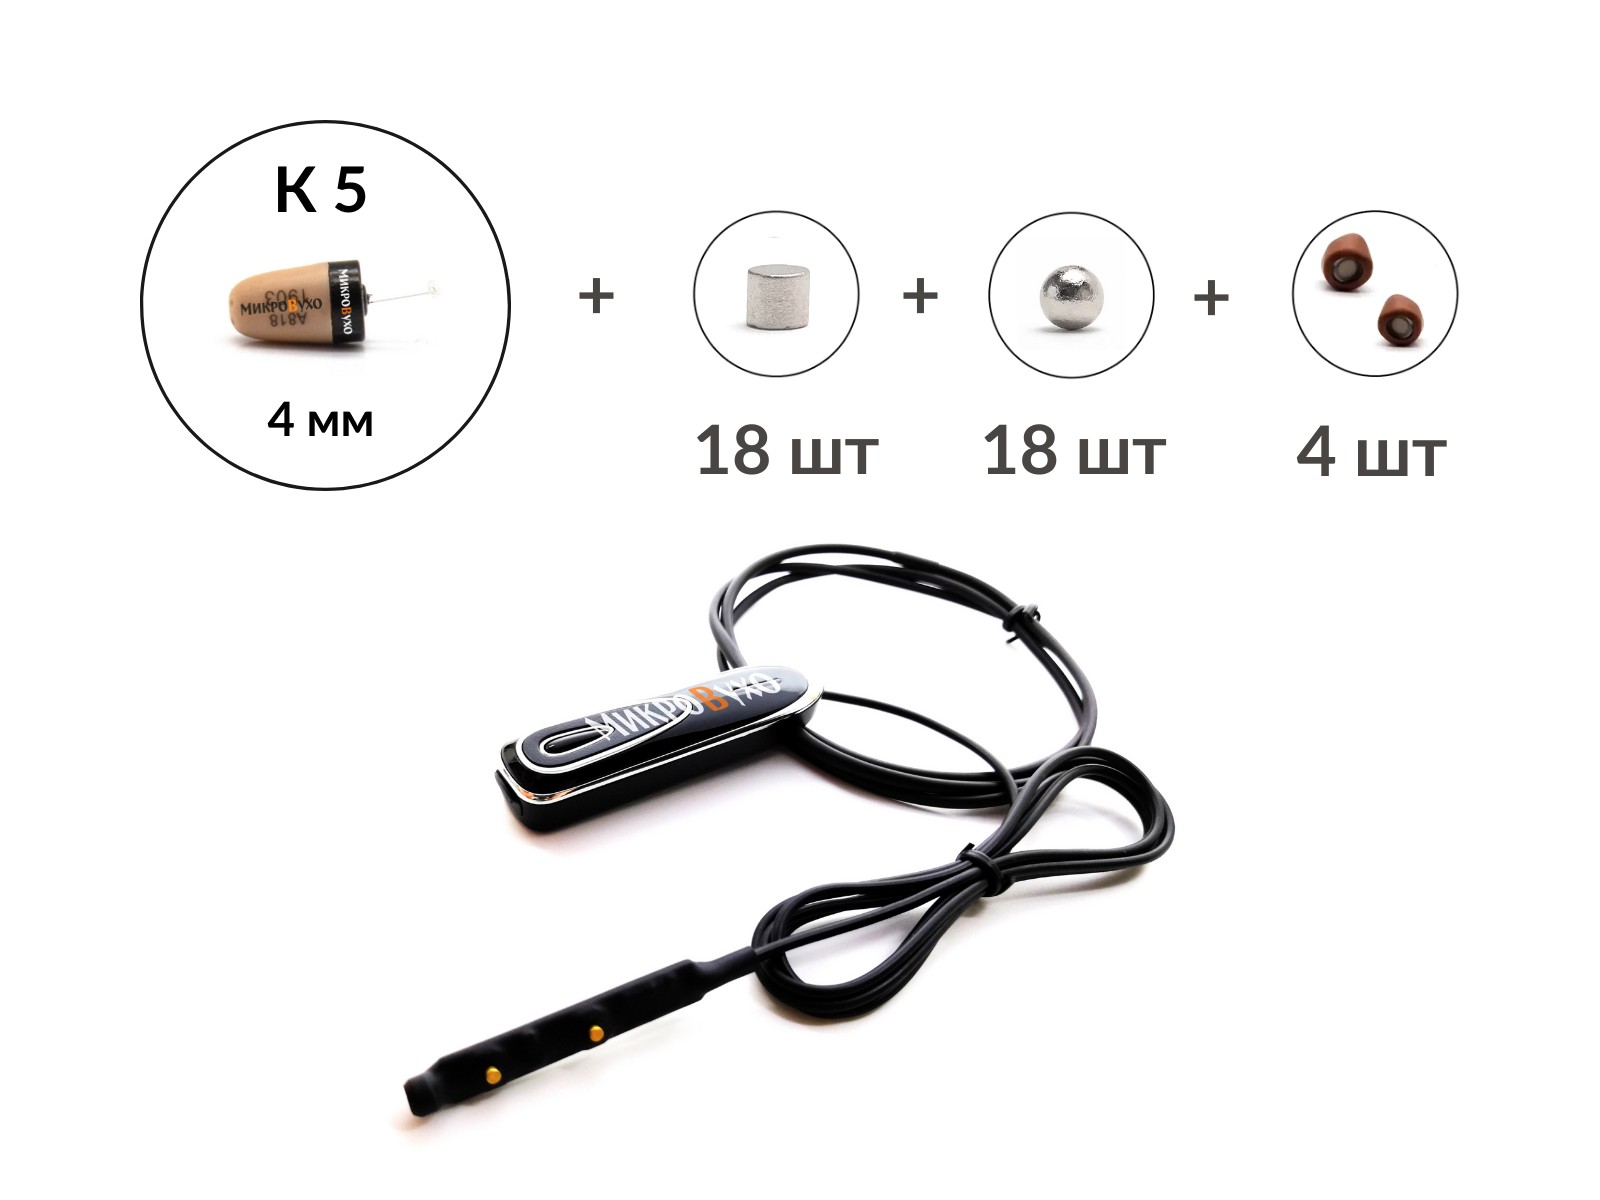 Bluetooth Premier c кнопкой-пищалкой, капсулой К5 4 мм и магнитами 2 мм - изображение 4